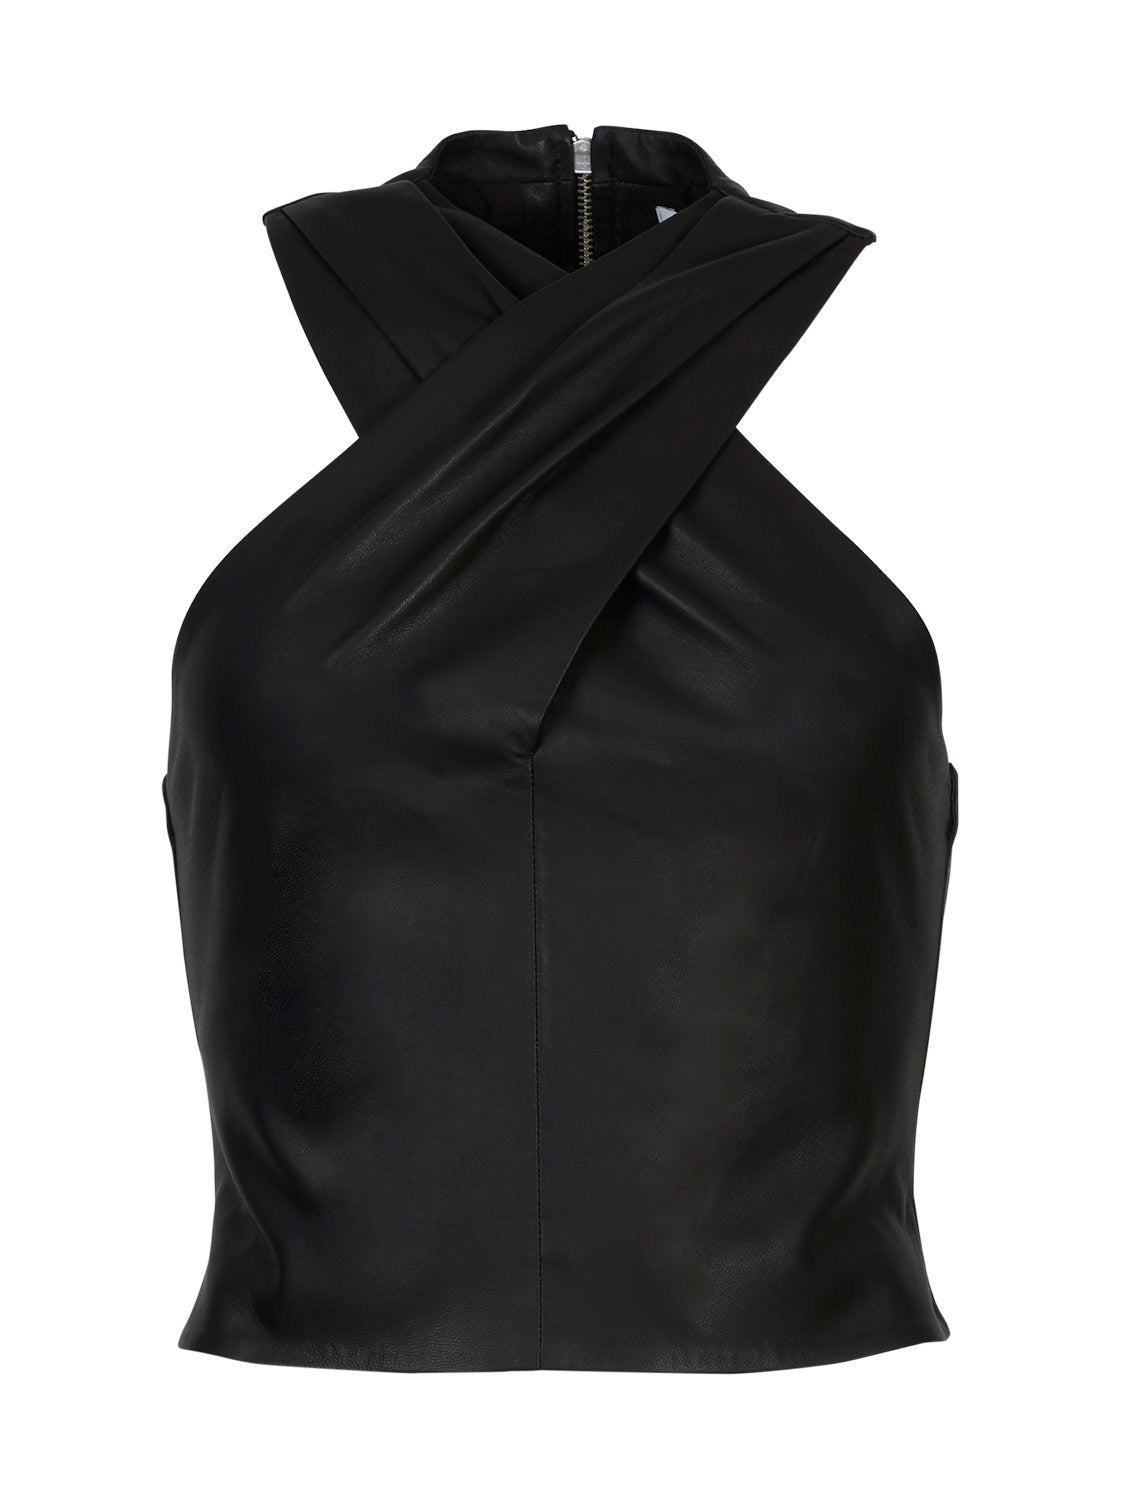 Lewie Leather Wrap Neck Top - Black